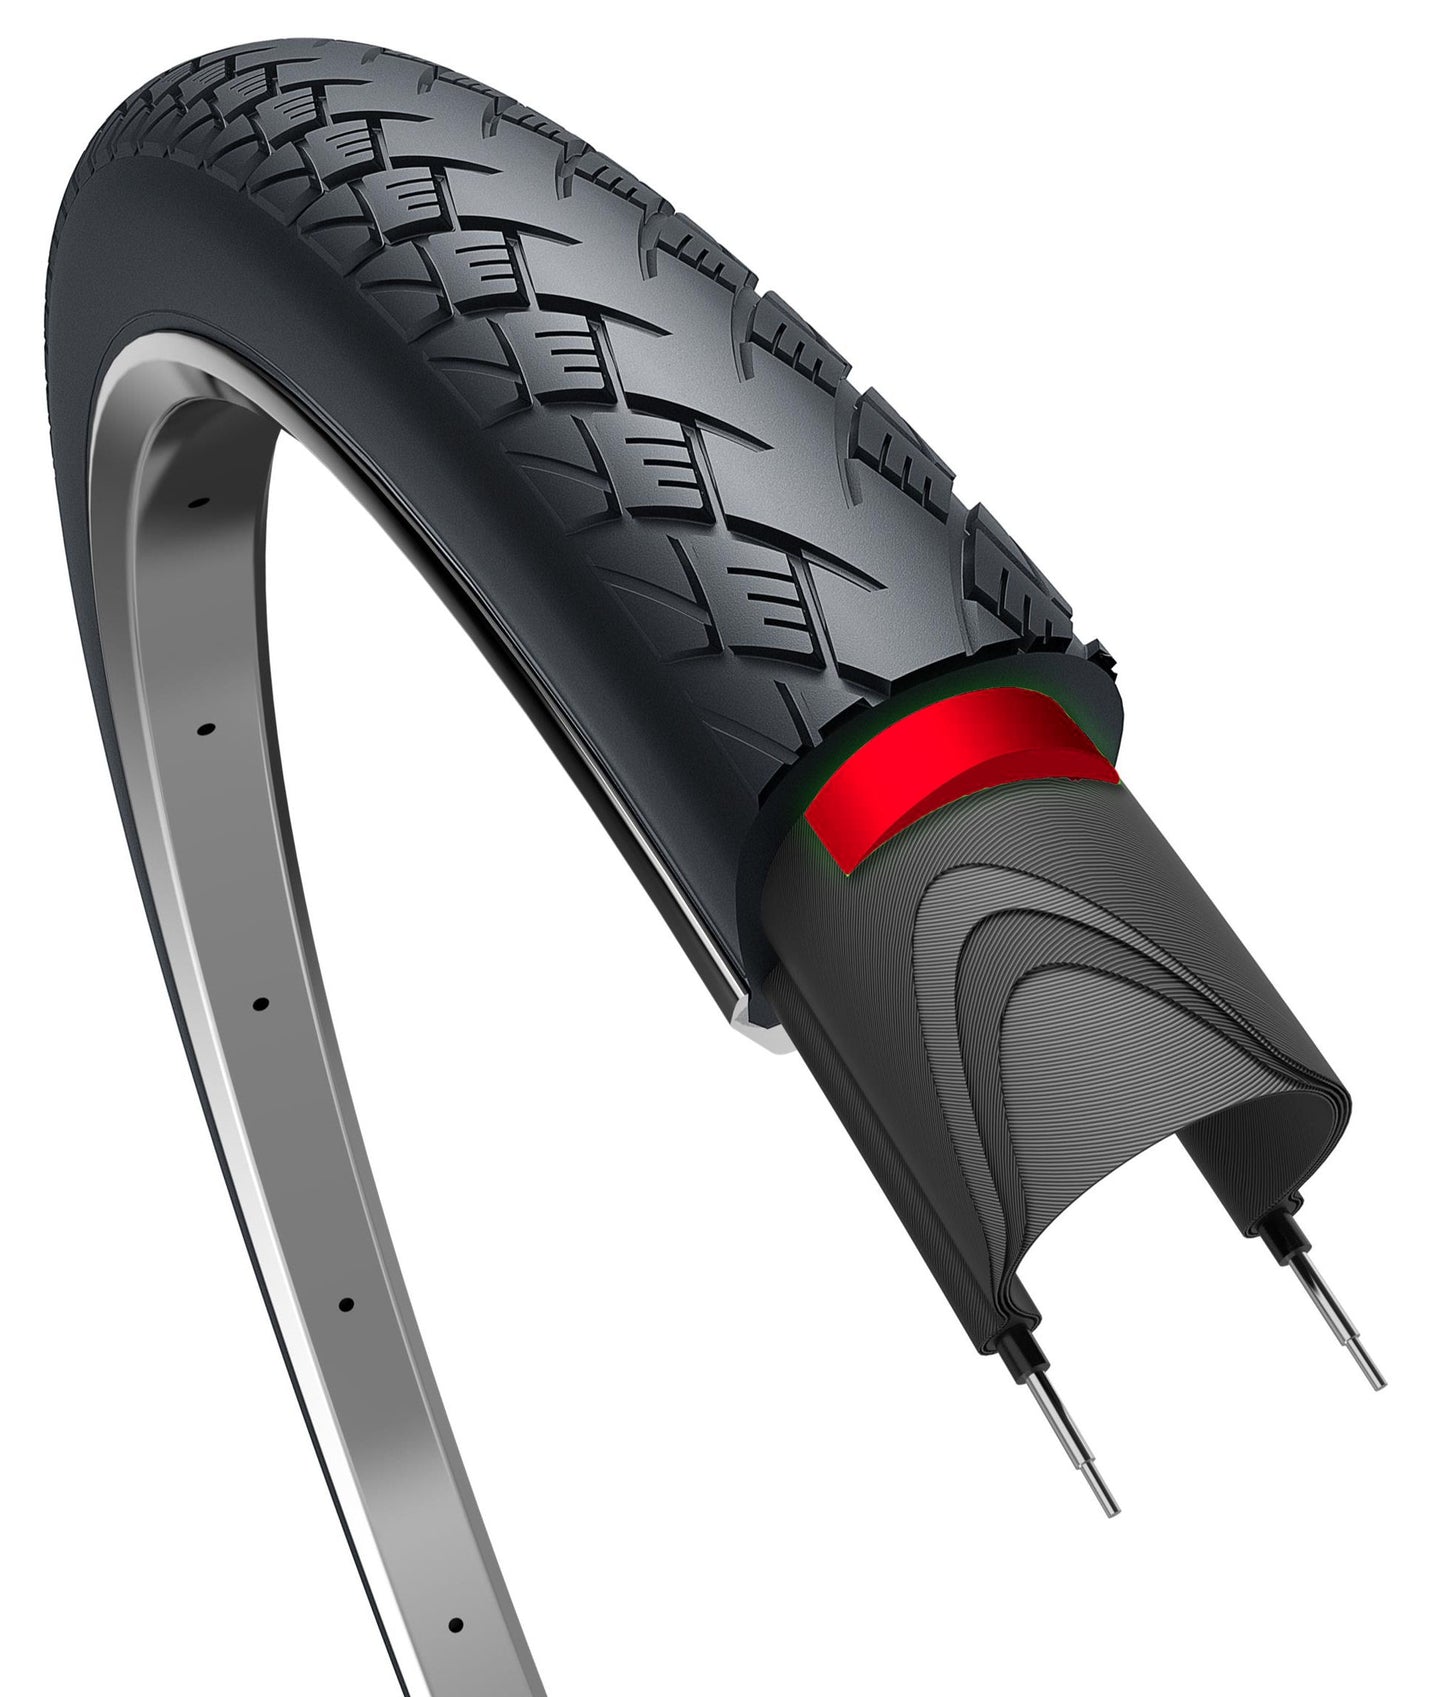 Proteger el metro de los neumáticos de borde más 28 x 1.50 40-622 mm negro con reflexión